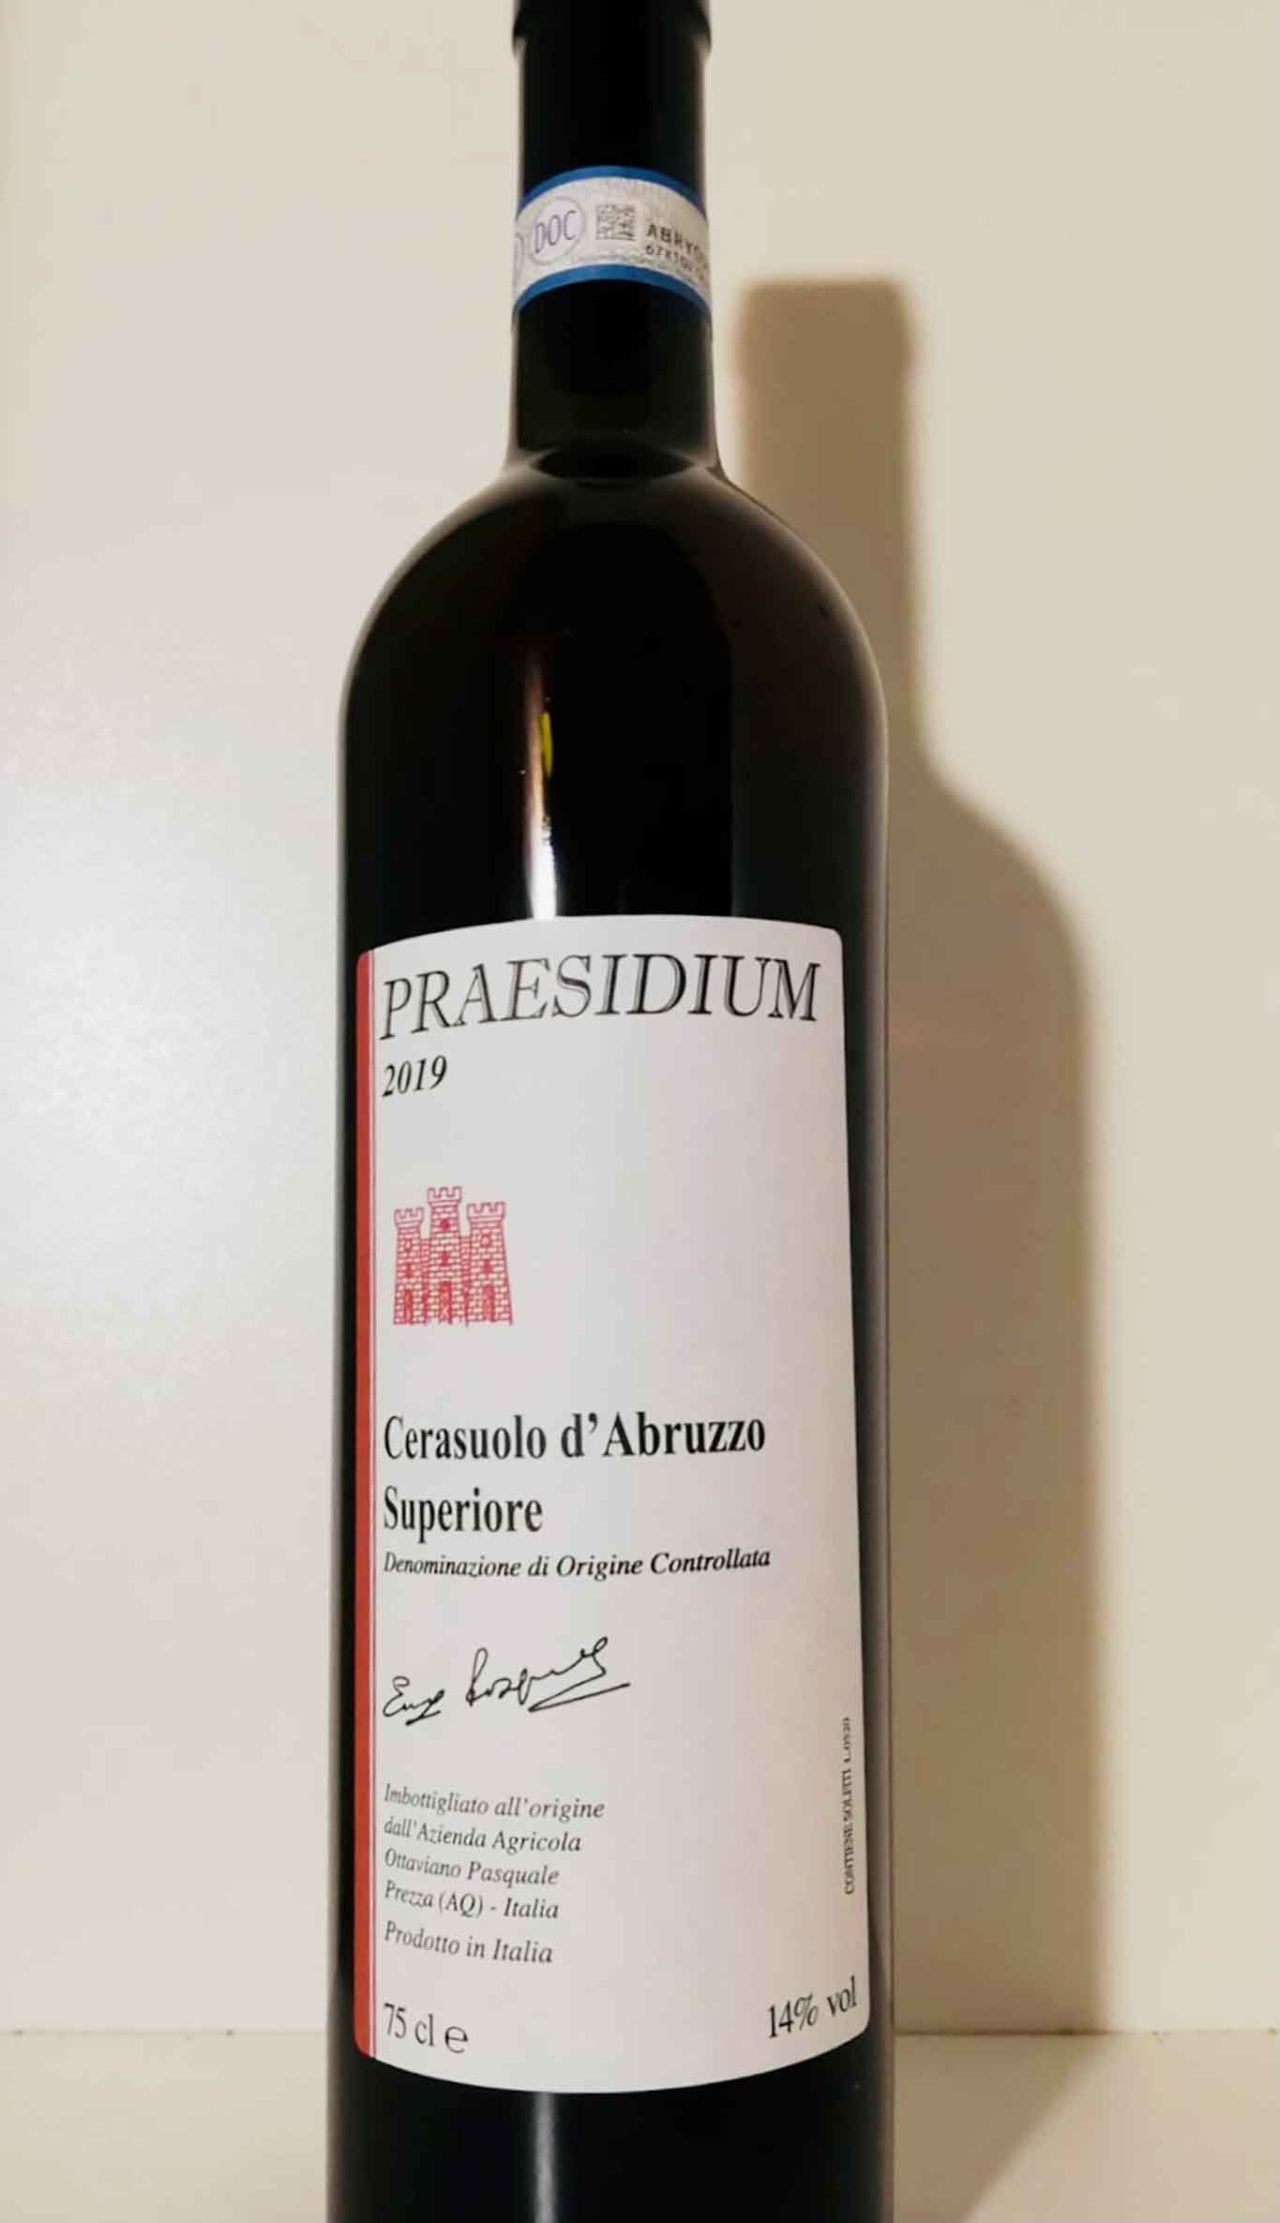 Cerasuolo d'Abruzzo Praesidium